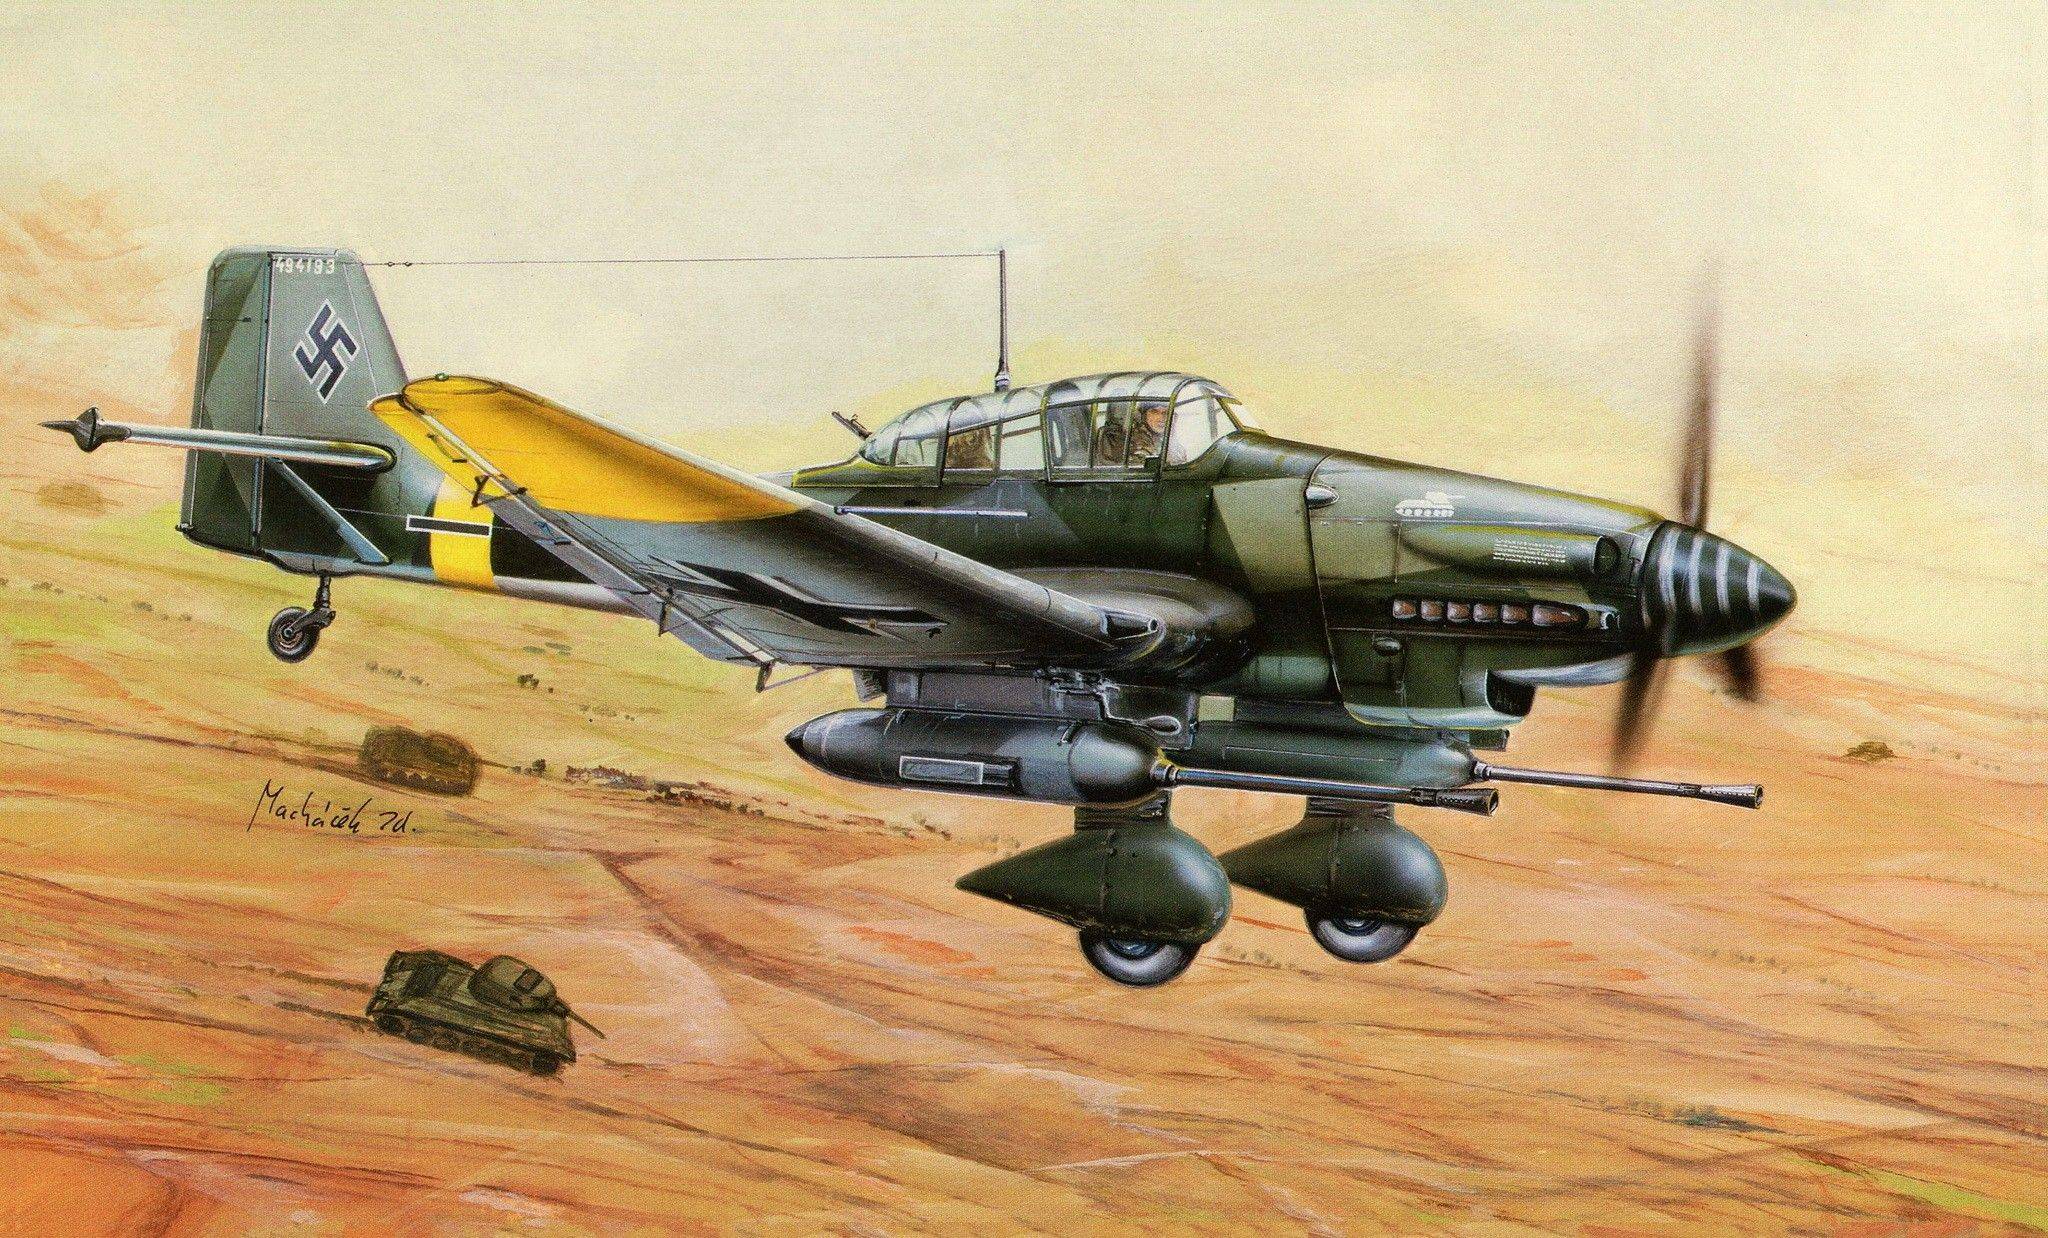 Пикирующий бомбардировщик «юнкерс» ju-87 «штука» - самолет люфтваффе второй мировой войны - фото самолета юнкерс ju-87 штука, характеристики, кабина, крылья, вооружение - самолеты германии - люфтваффе